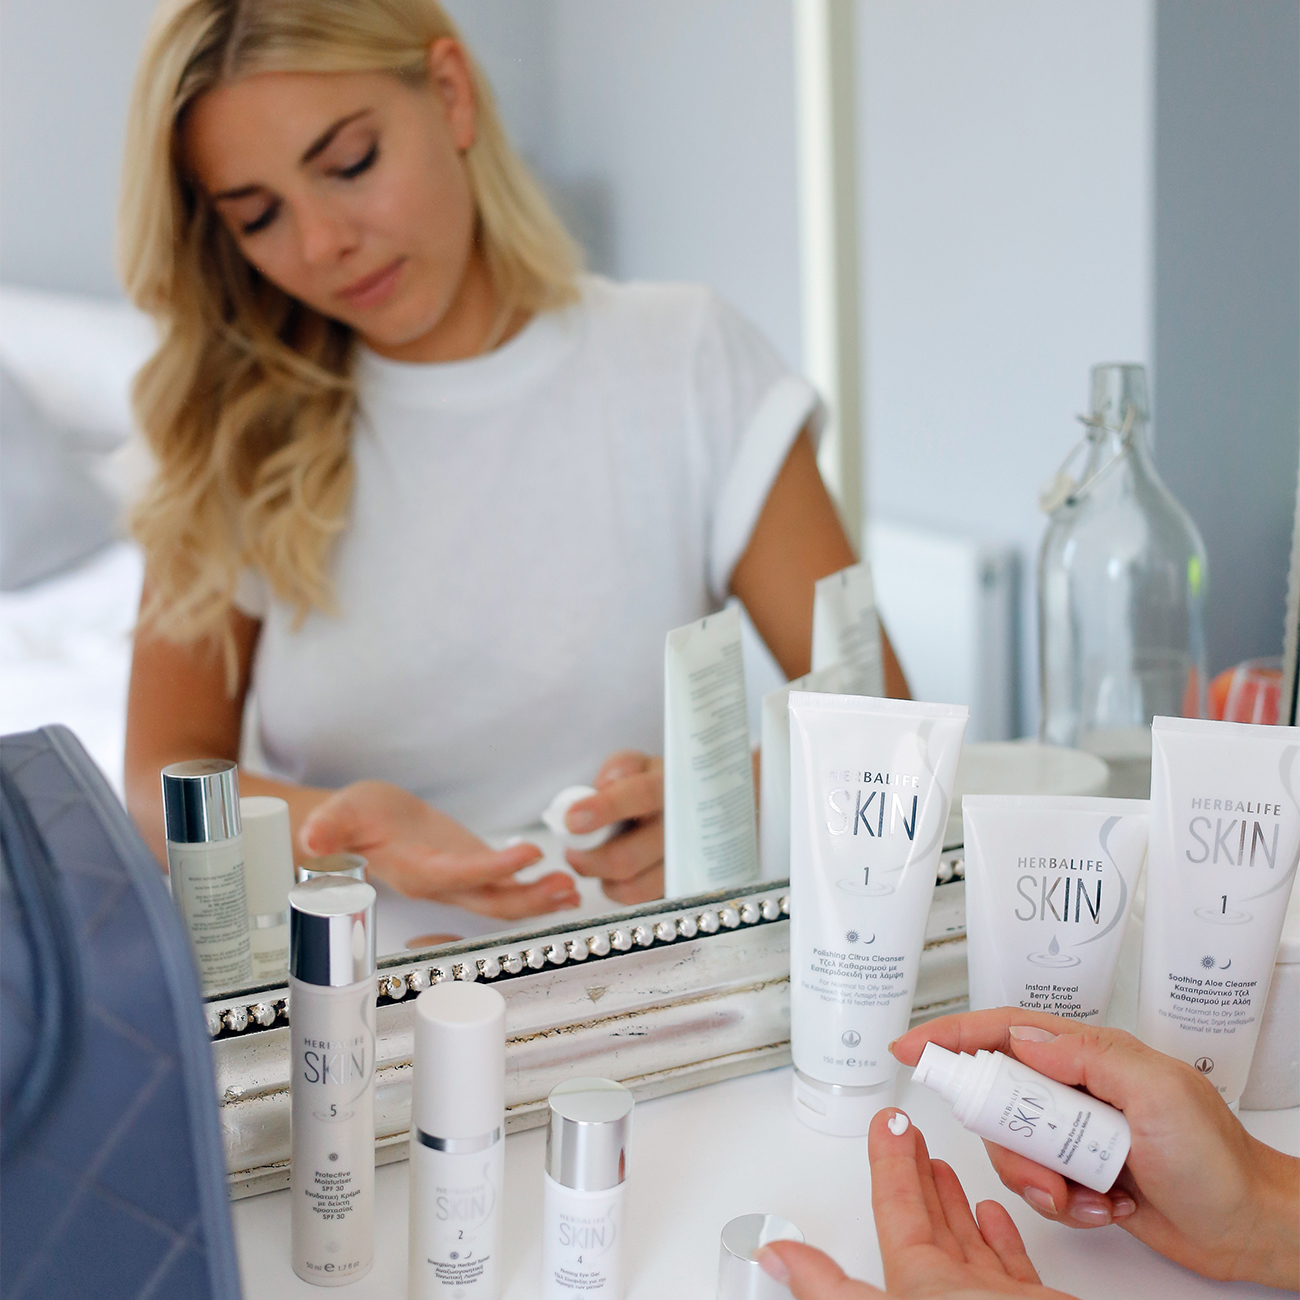 Μια γυναίκα μπροστά σε καθρέπτη χρησιμοποιεί τα προϊόντα της σειράς Herbalife Skin